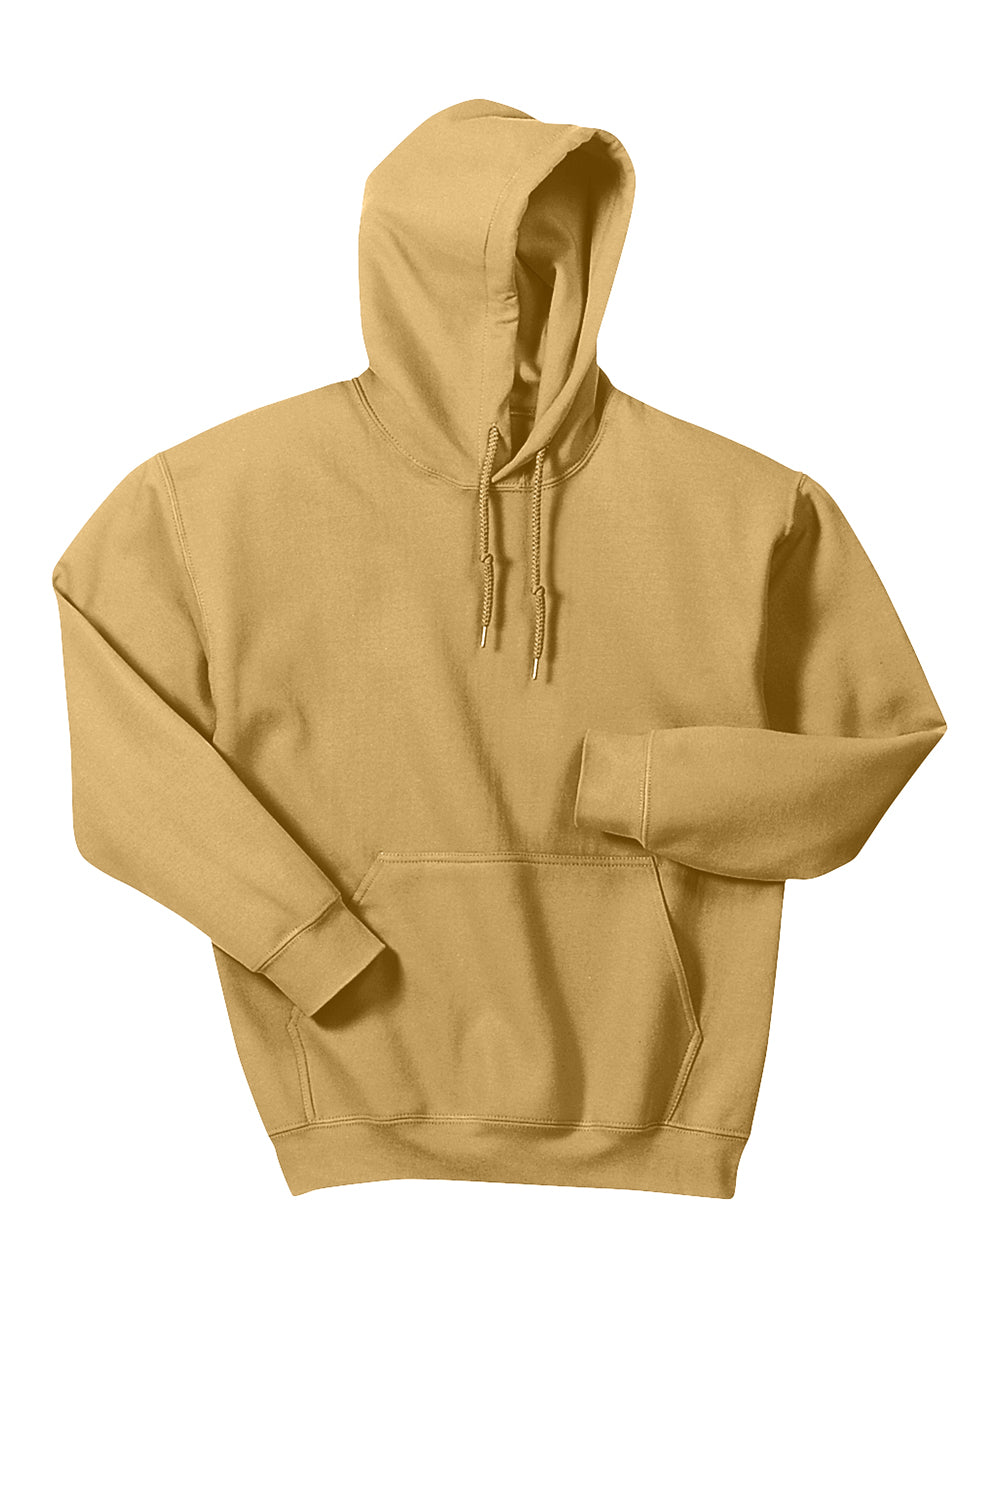 Gildan Mens Hooded Sweatshirt Hoodie Old Gold Flat Front